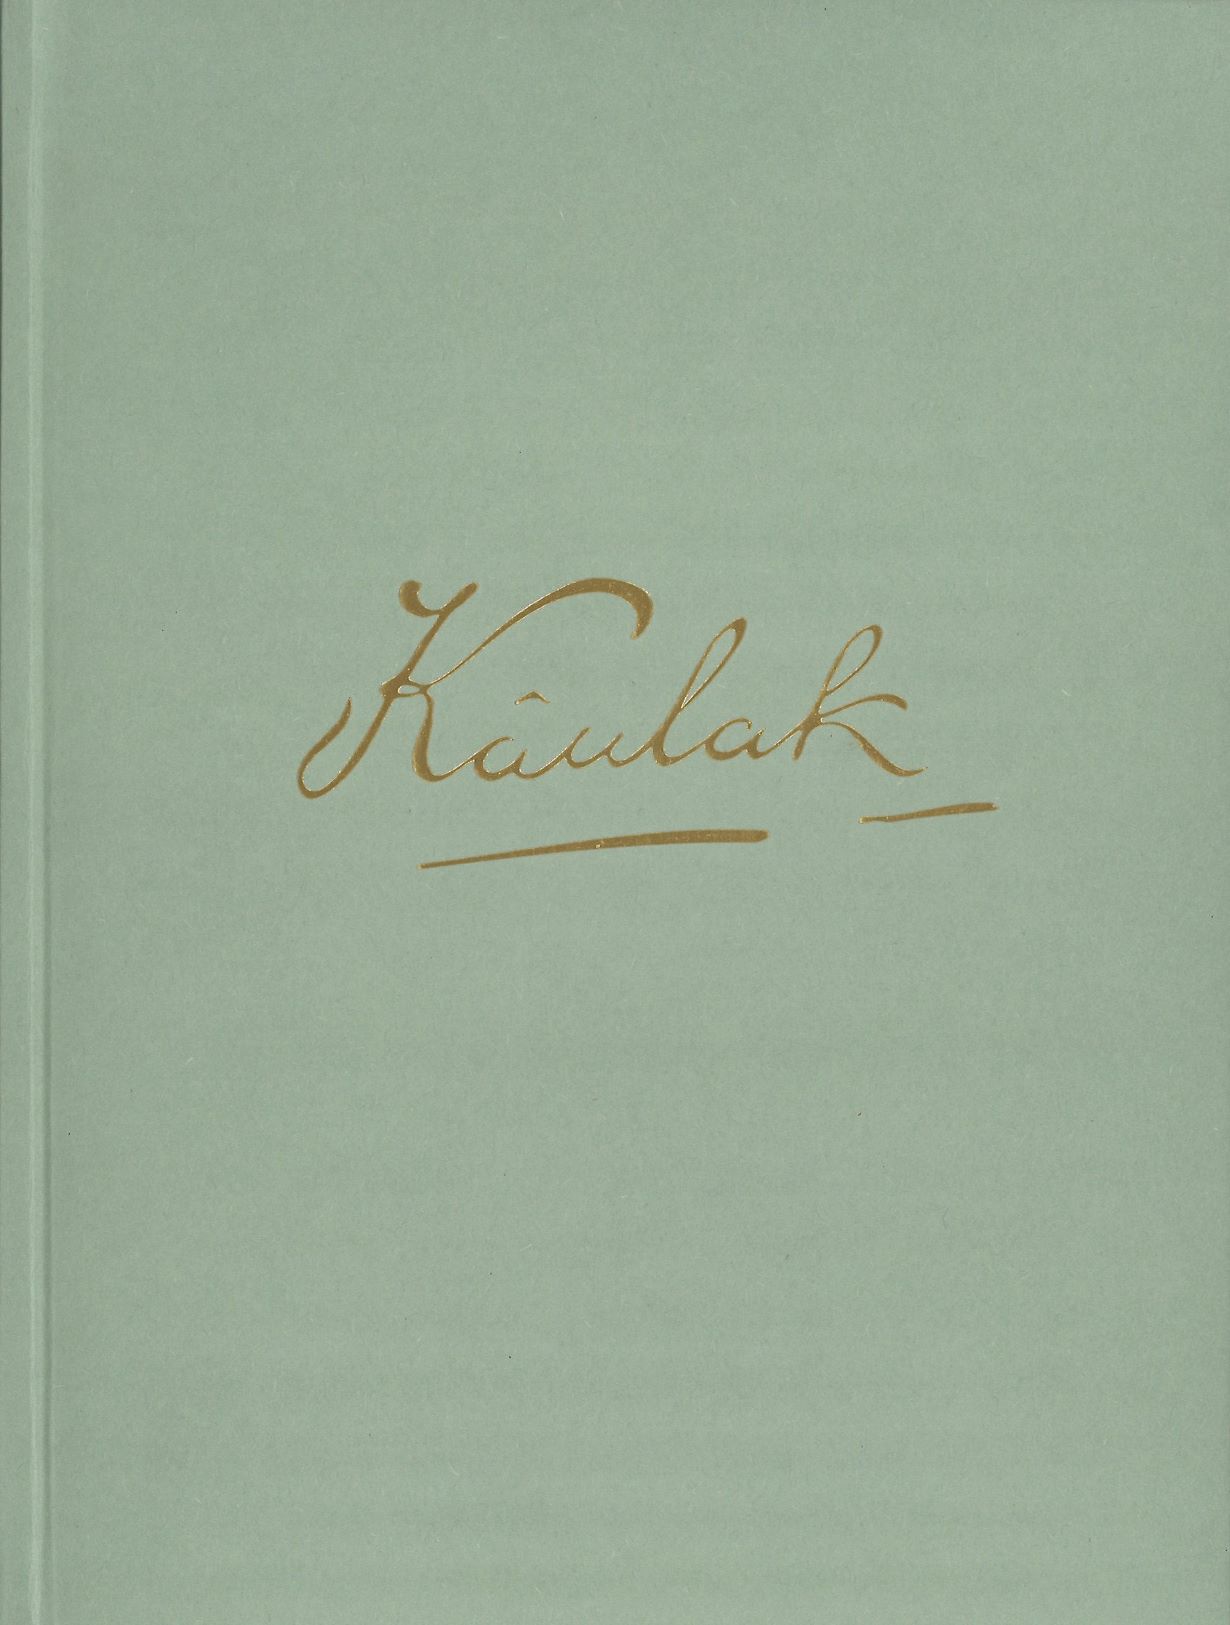 Imagen de portada del libro Kâulak, fotógrafo, pintor y escritor